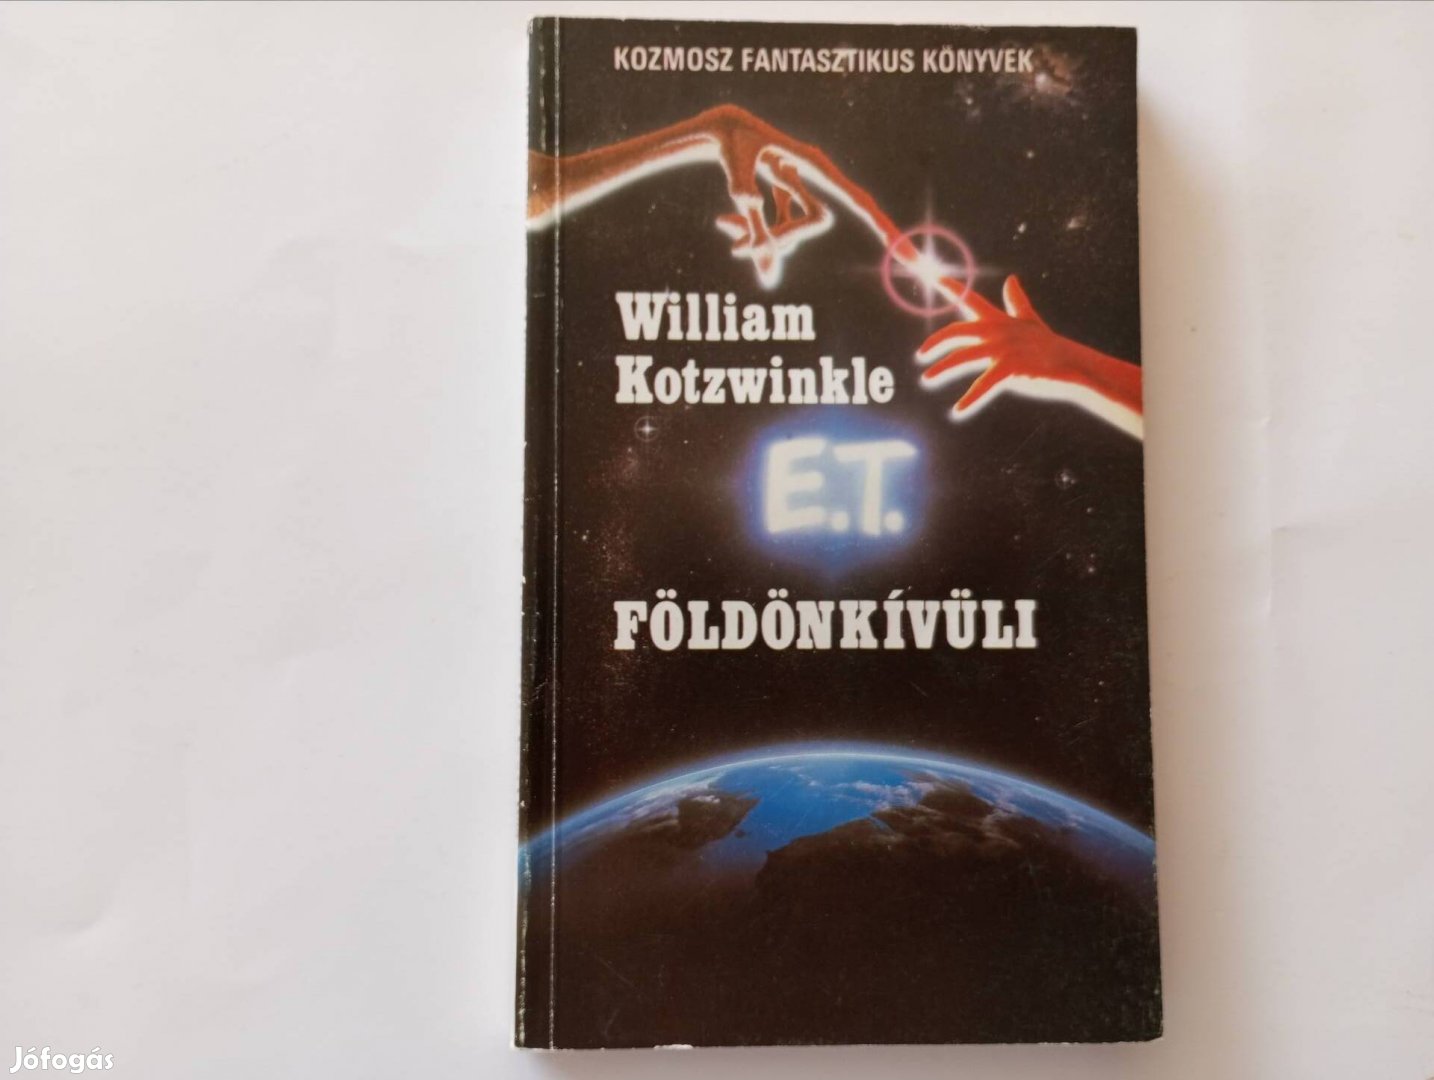 William Kotzwinkle - E.T. földönkívüli (regény)